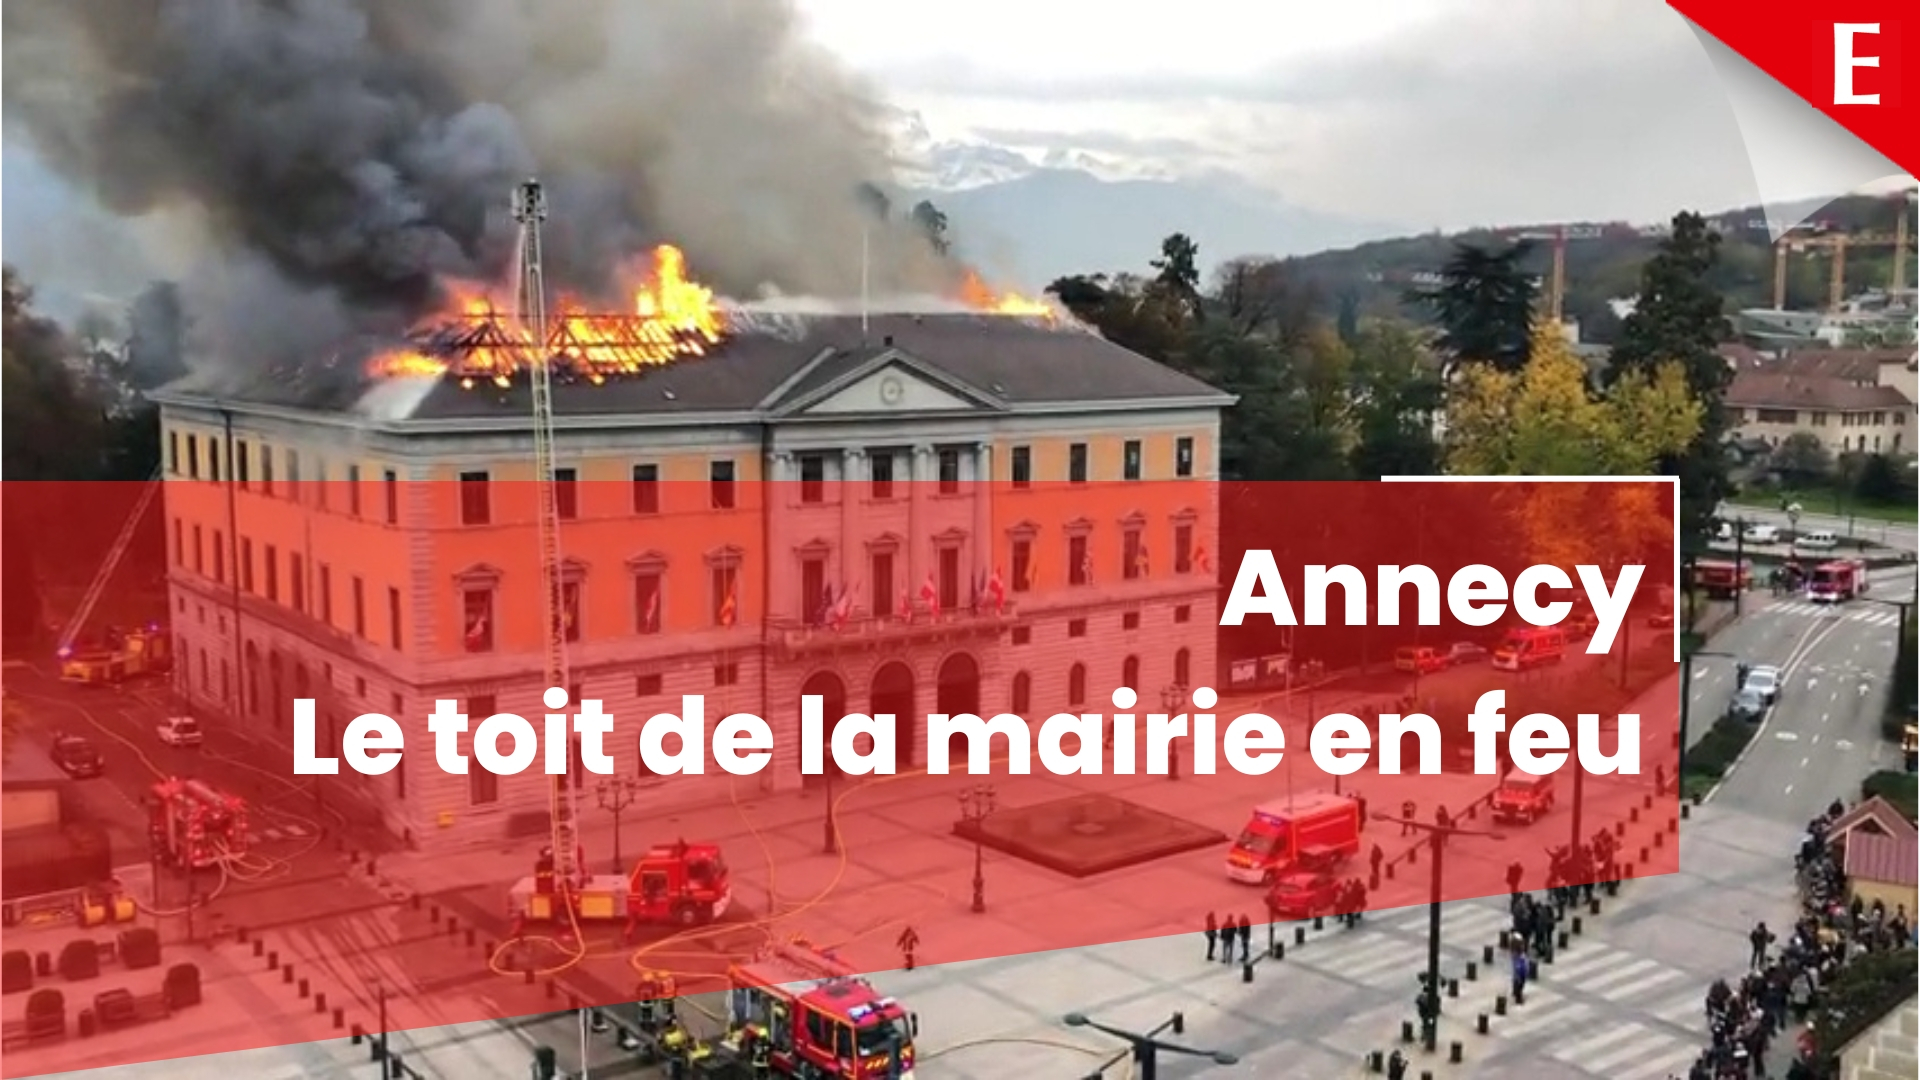 Le toit de la mairie d'Annecy est en flammes,jeudi 14 novembre 2019 (Le Messager)